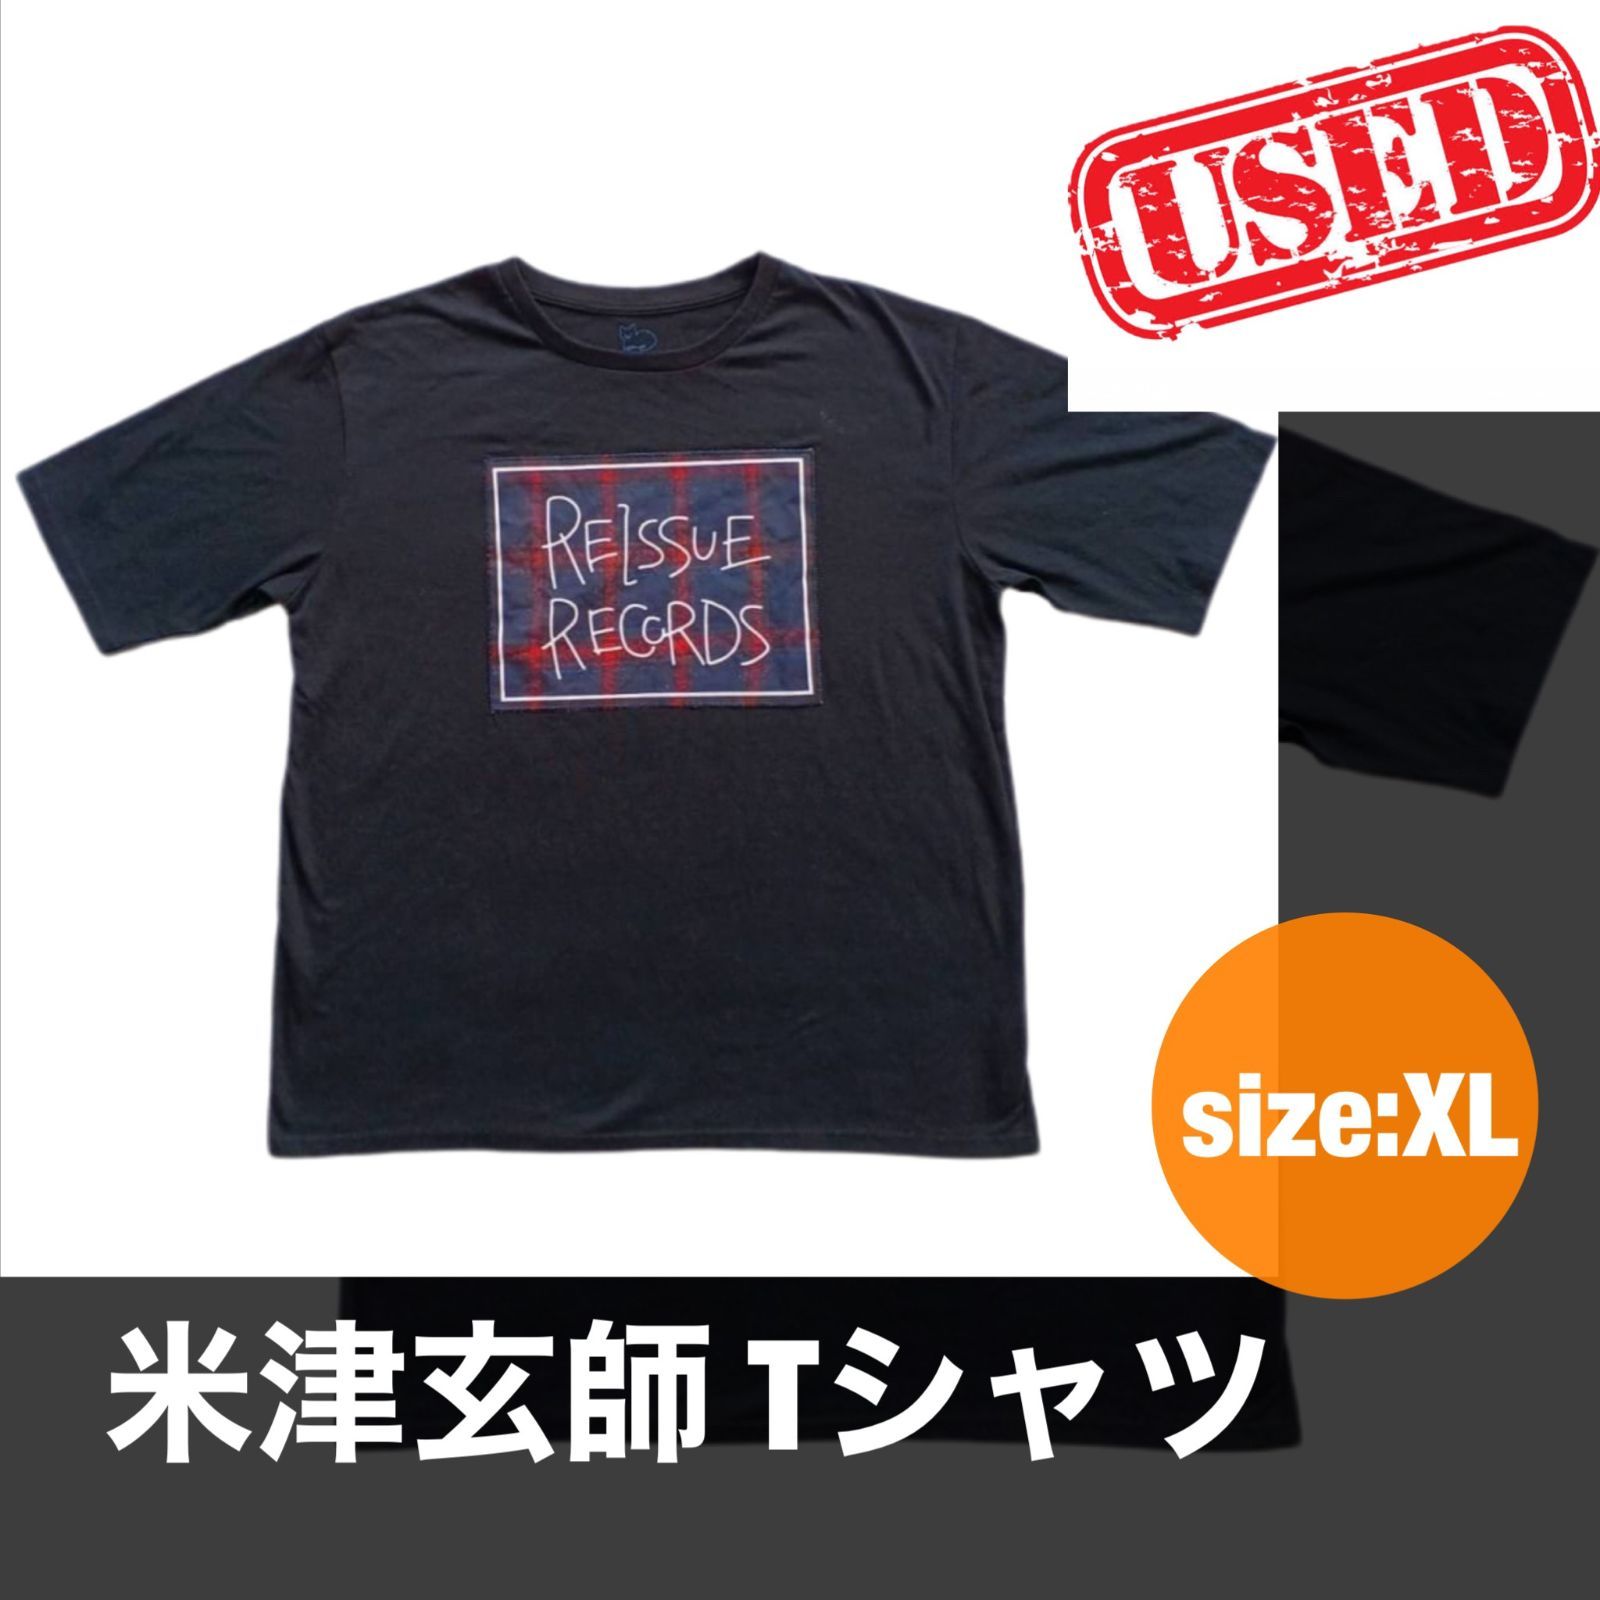 USED 米津玄師2019年ツアーTシャツ - メルカリ